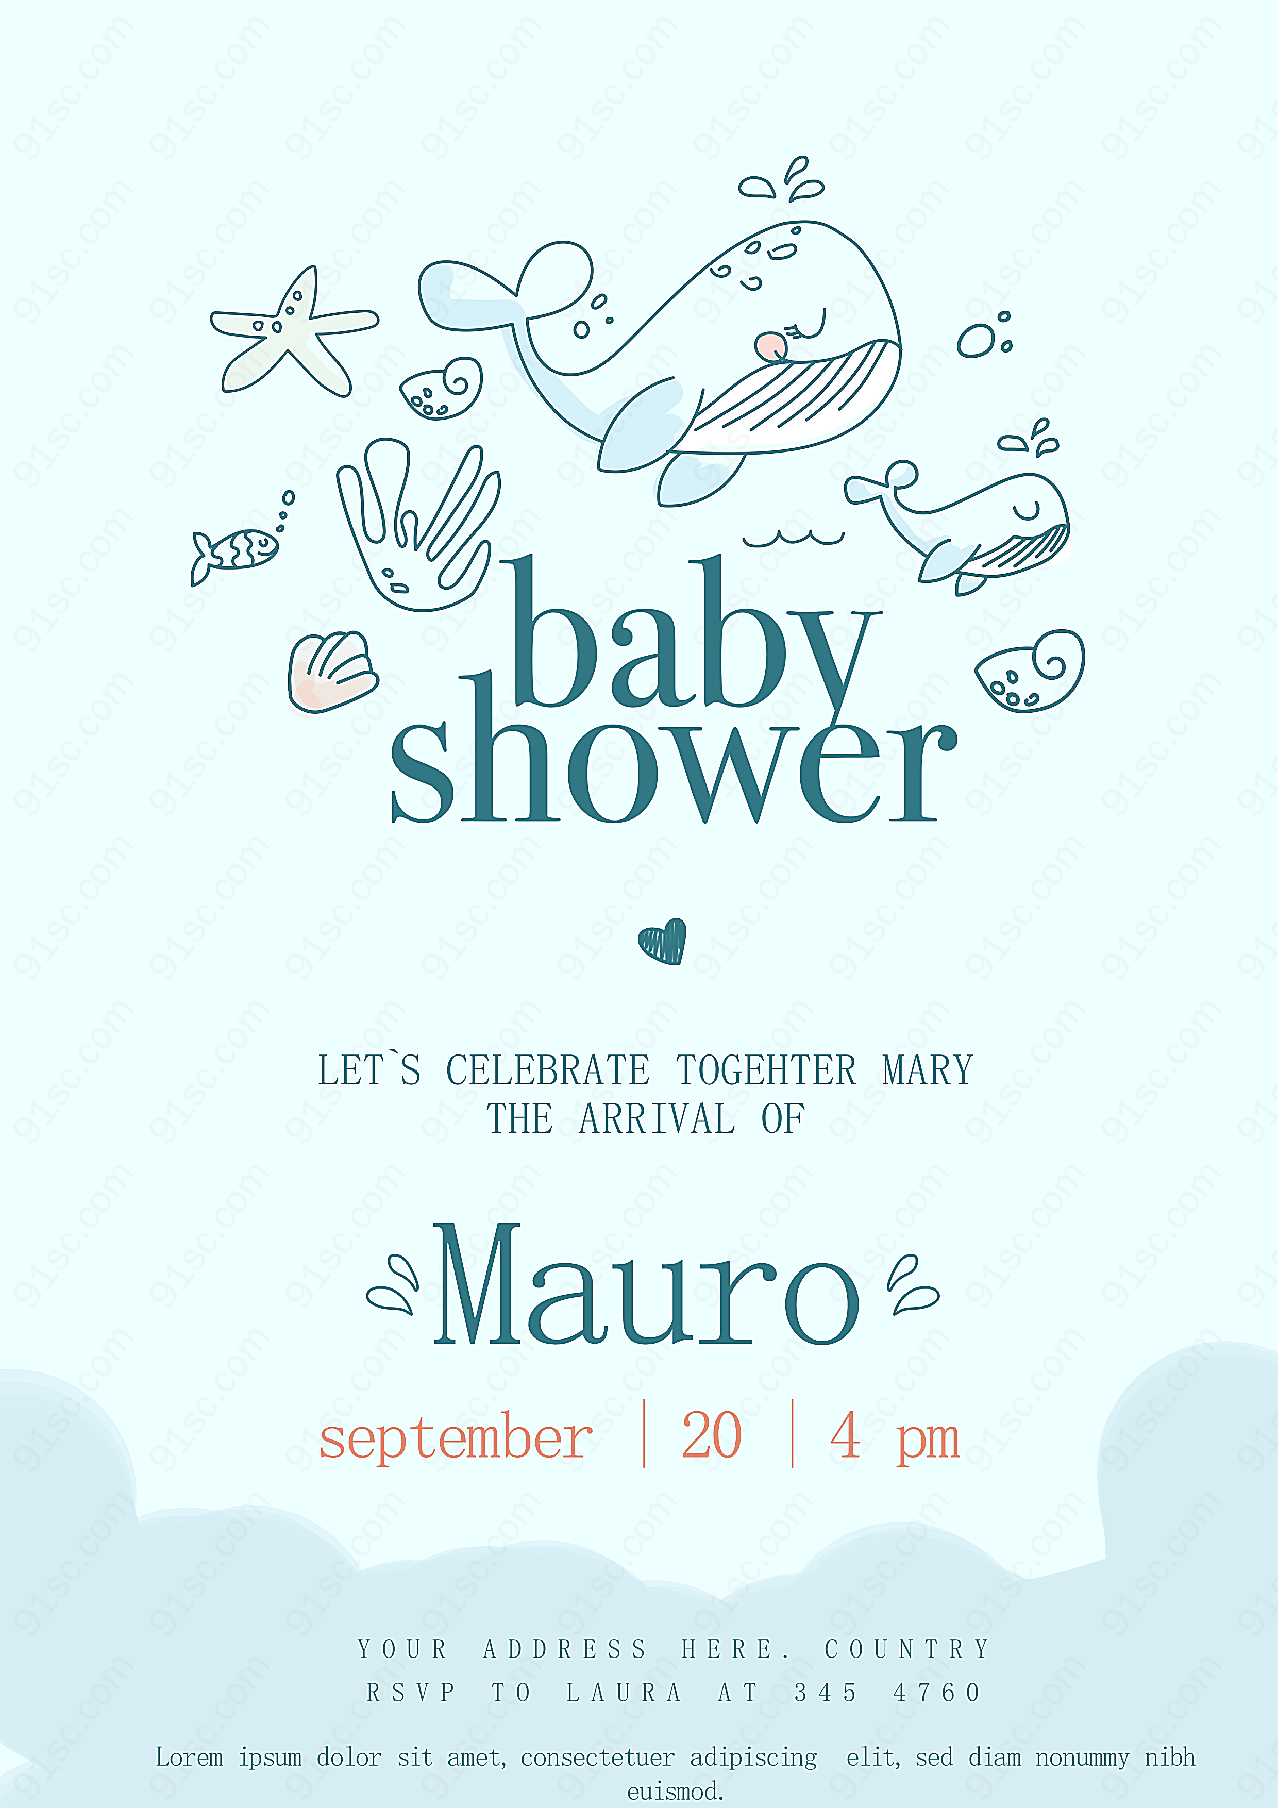 婴儿淋浴庆祝海报高清设计